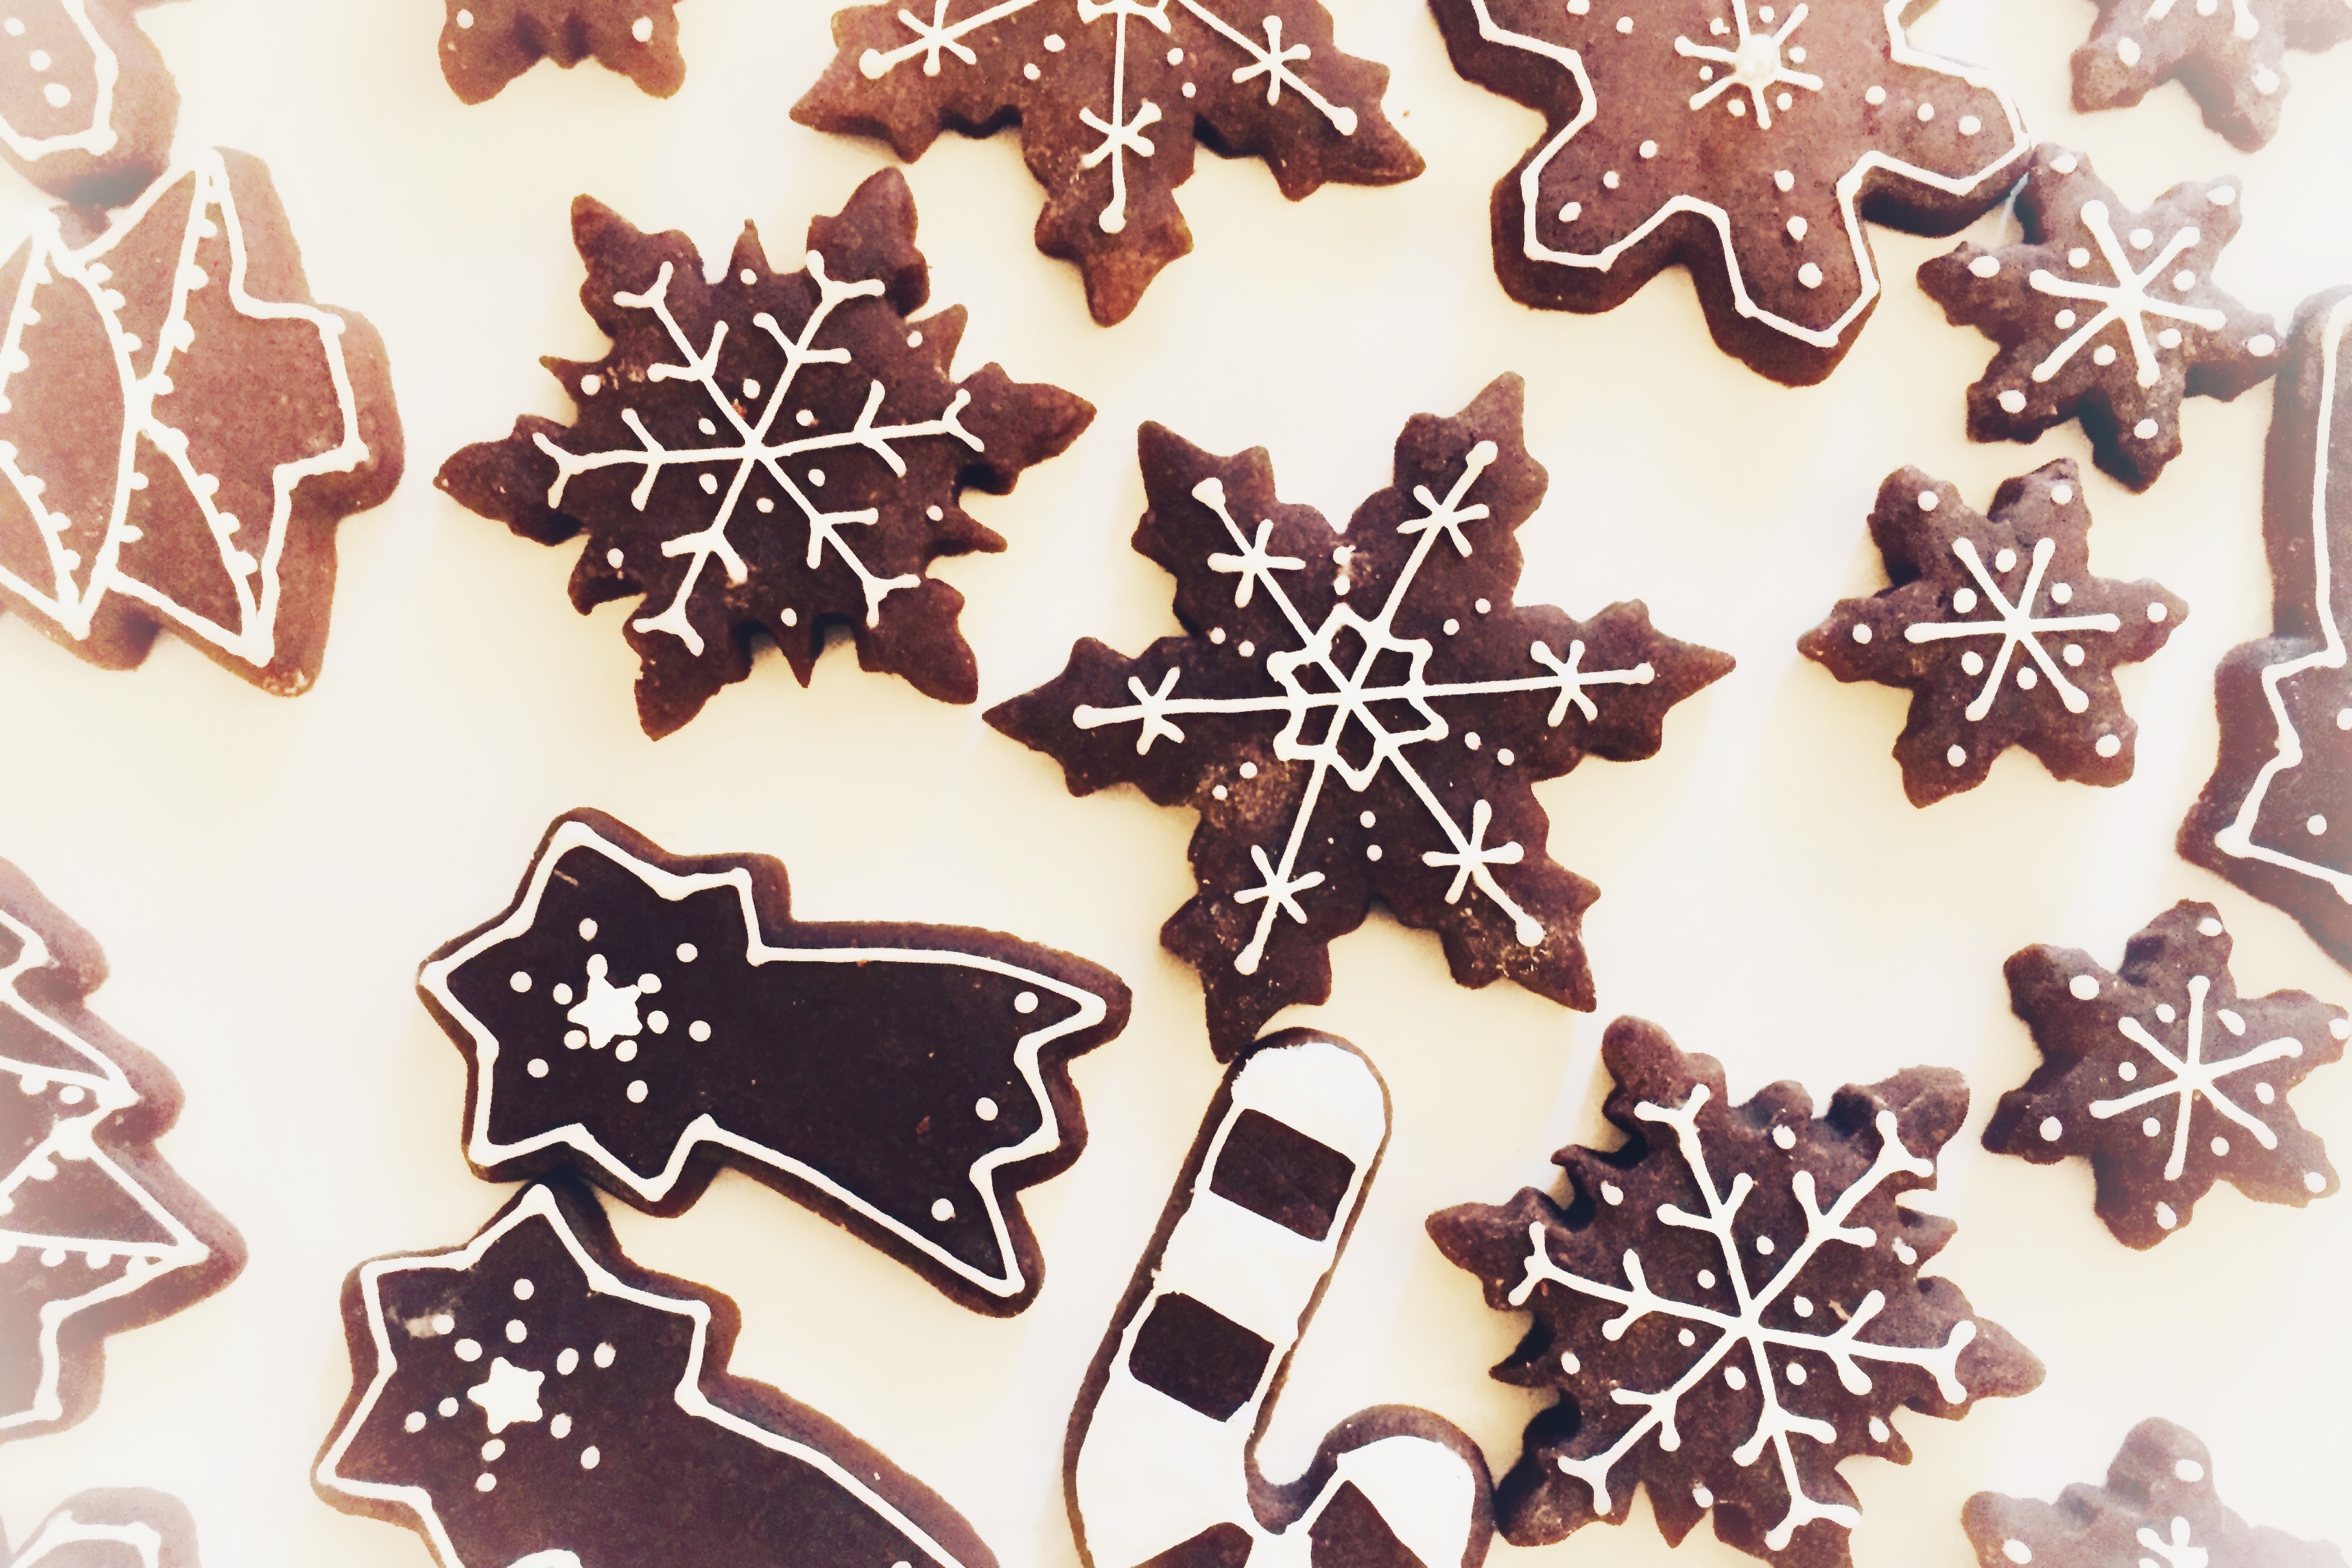 Biscotti di Natale: Sablée al cacao decorati con ghiaccia reale